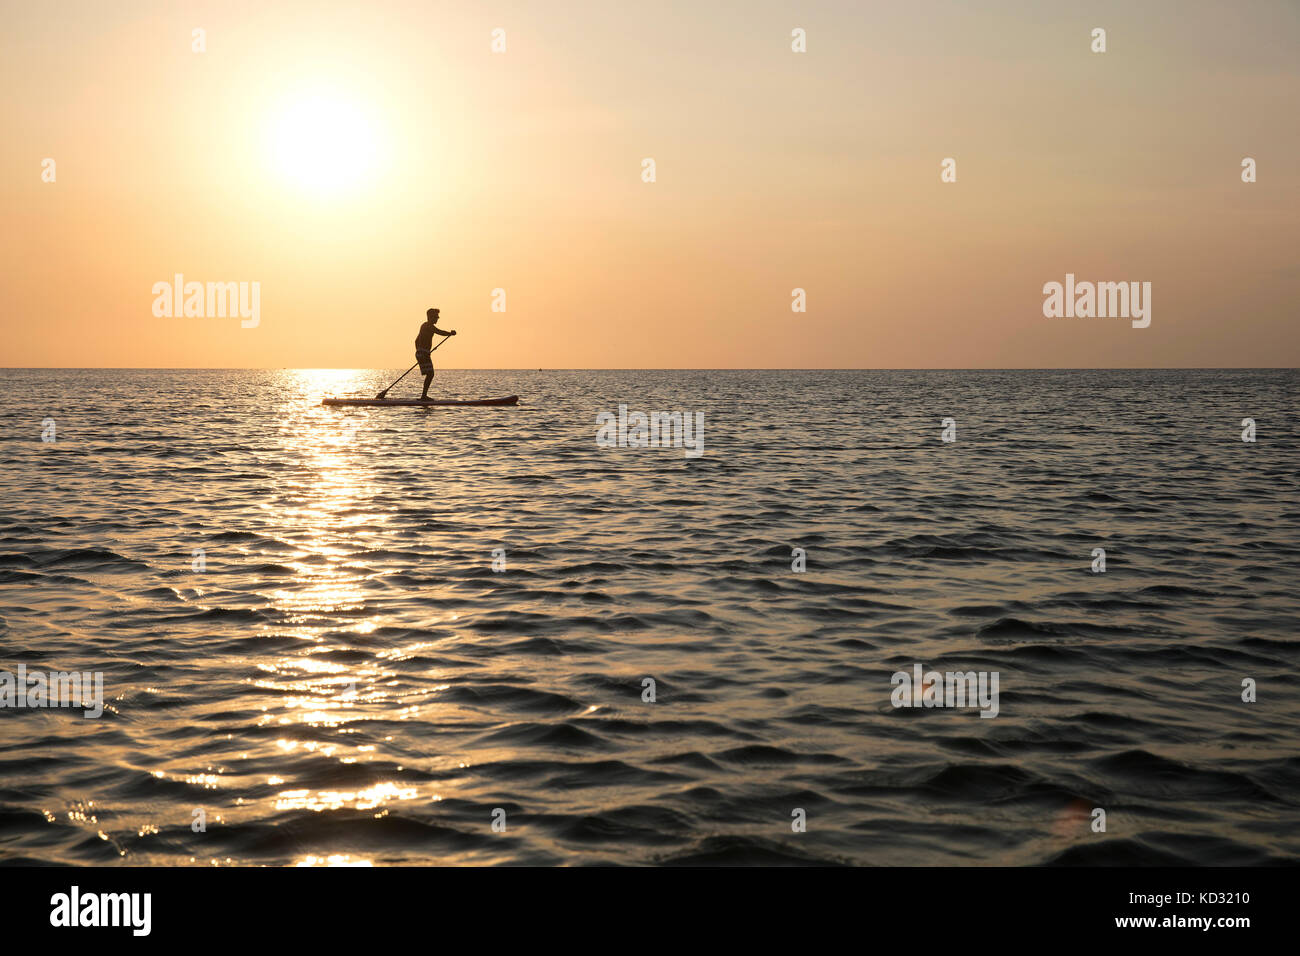 Man on paddleboard at sunset, Kilindoni, Pwani, Tanzania, Africa Stock Photo